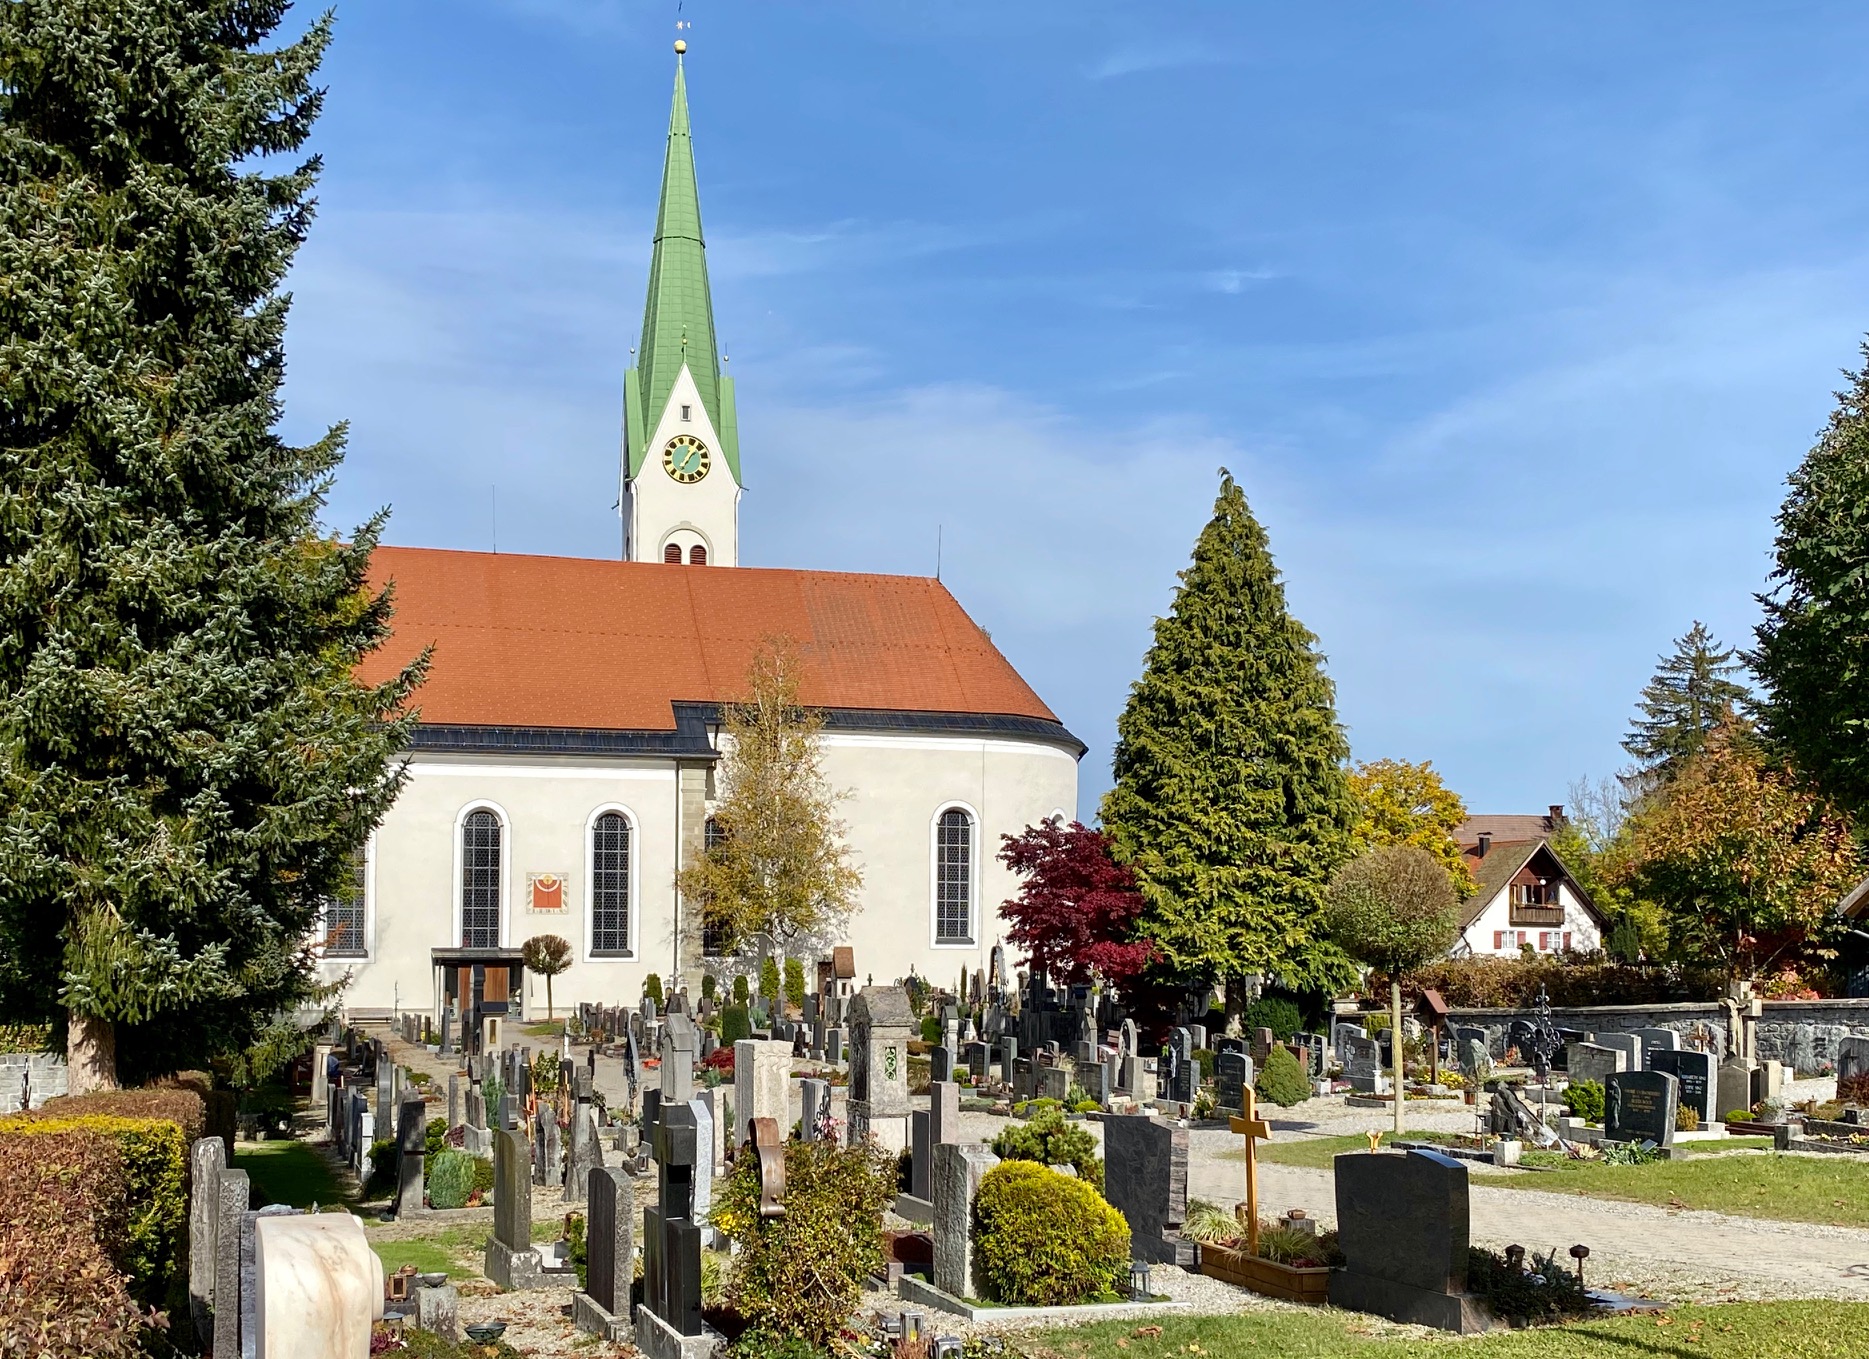  Blick auf Friedhof Weiler im Allgäu und auf die Kirche - das Bild wird mit Klick vergrößert 